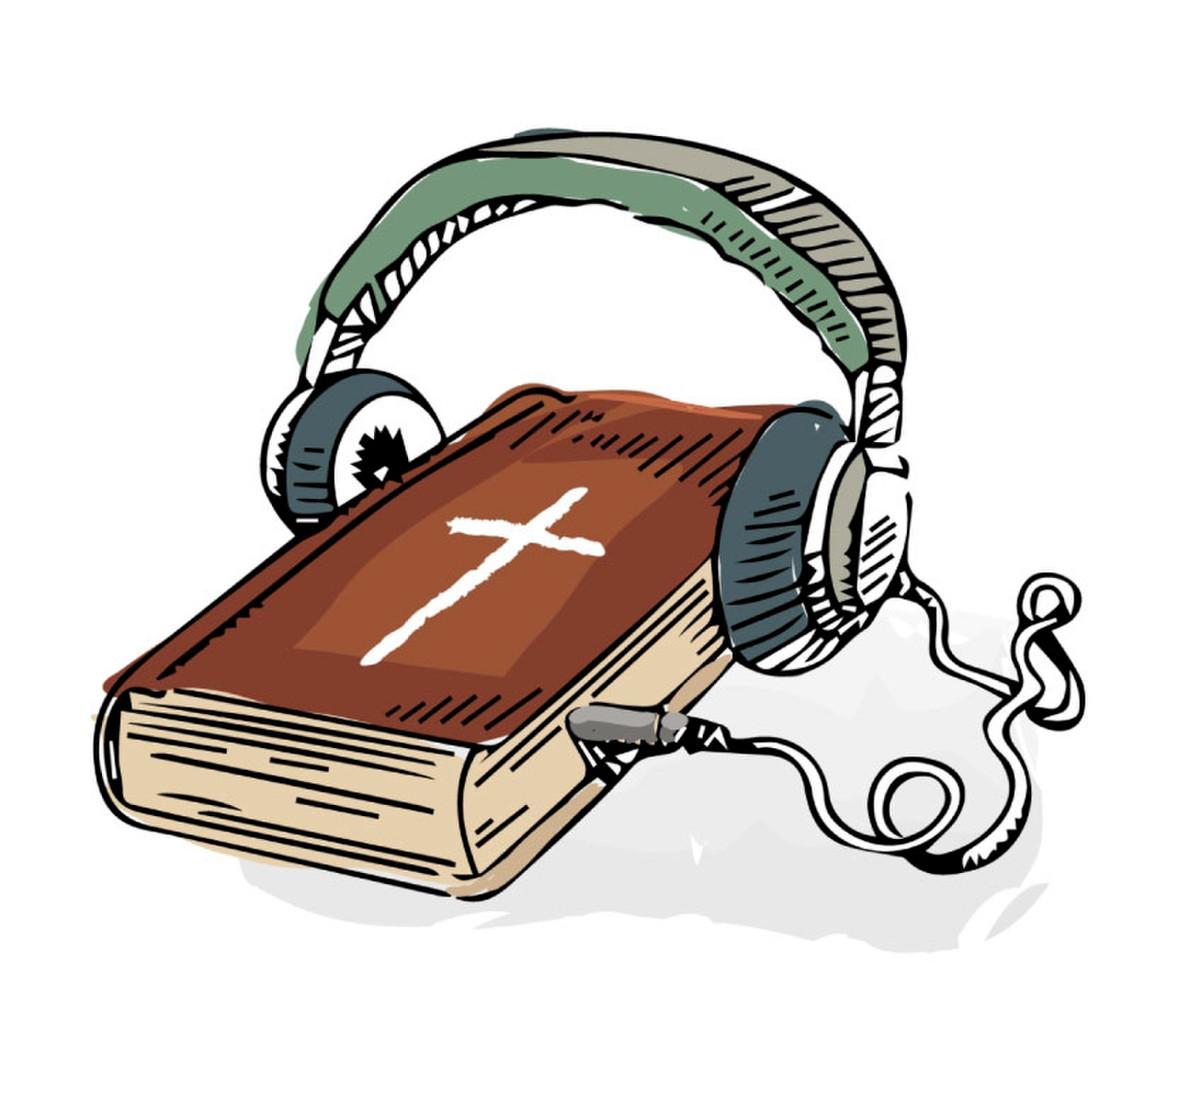 Älypuhelimella podcastit kulkevat mukana kaikkialle. Raamattu- ja kristinuskotietouttaan voi kasvattaa milloin ja missä haluaa. 